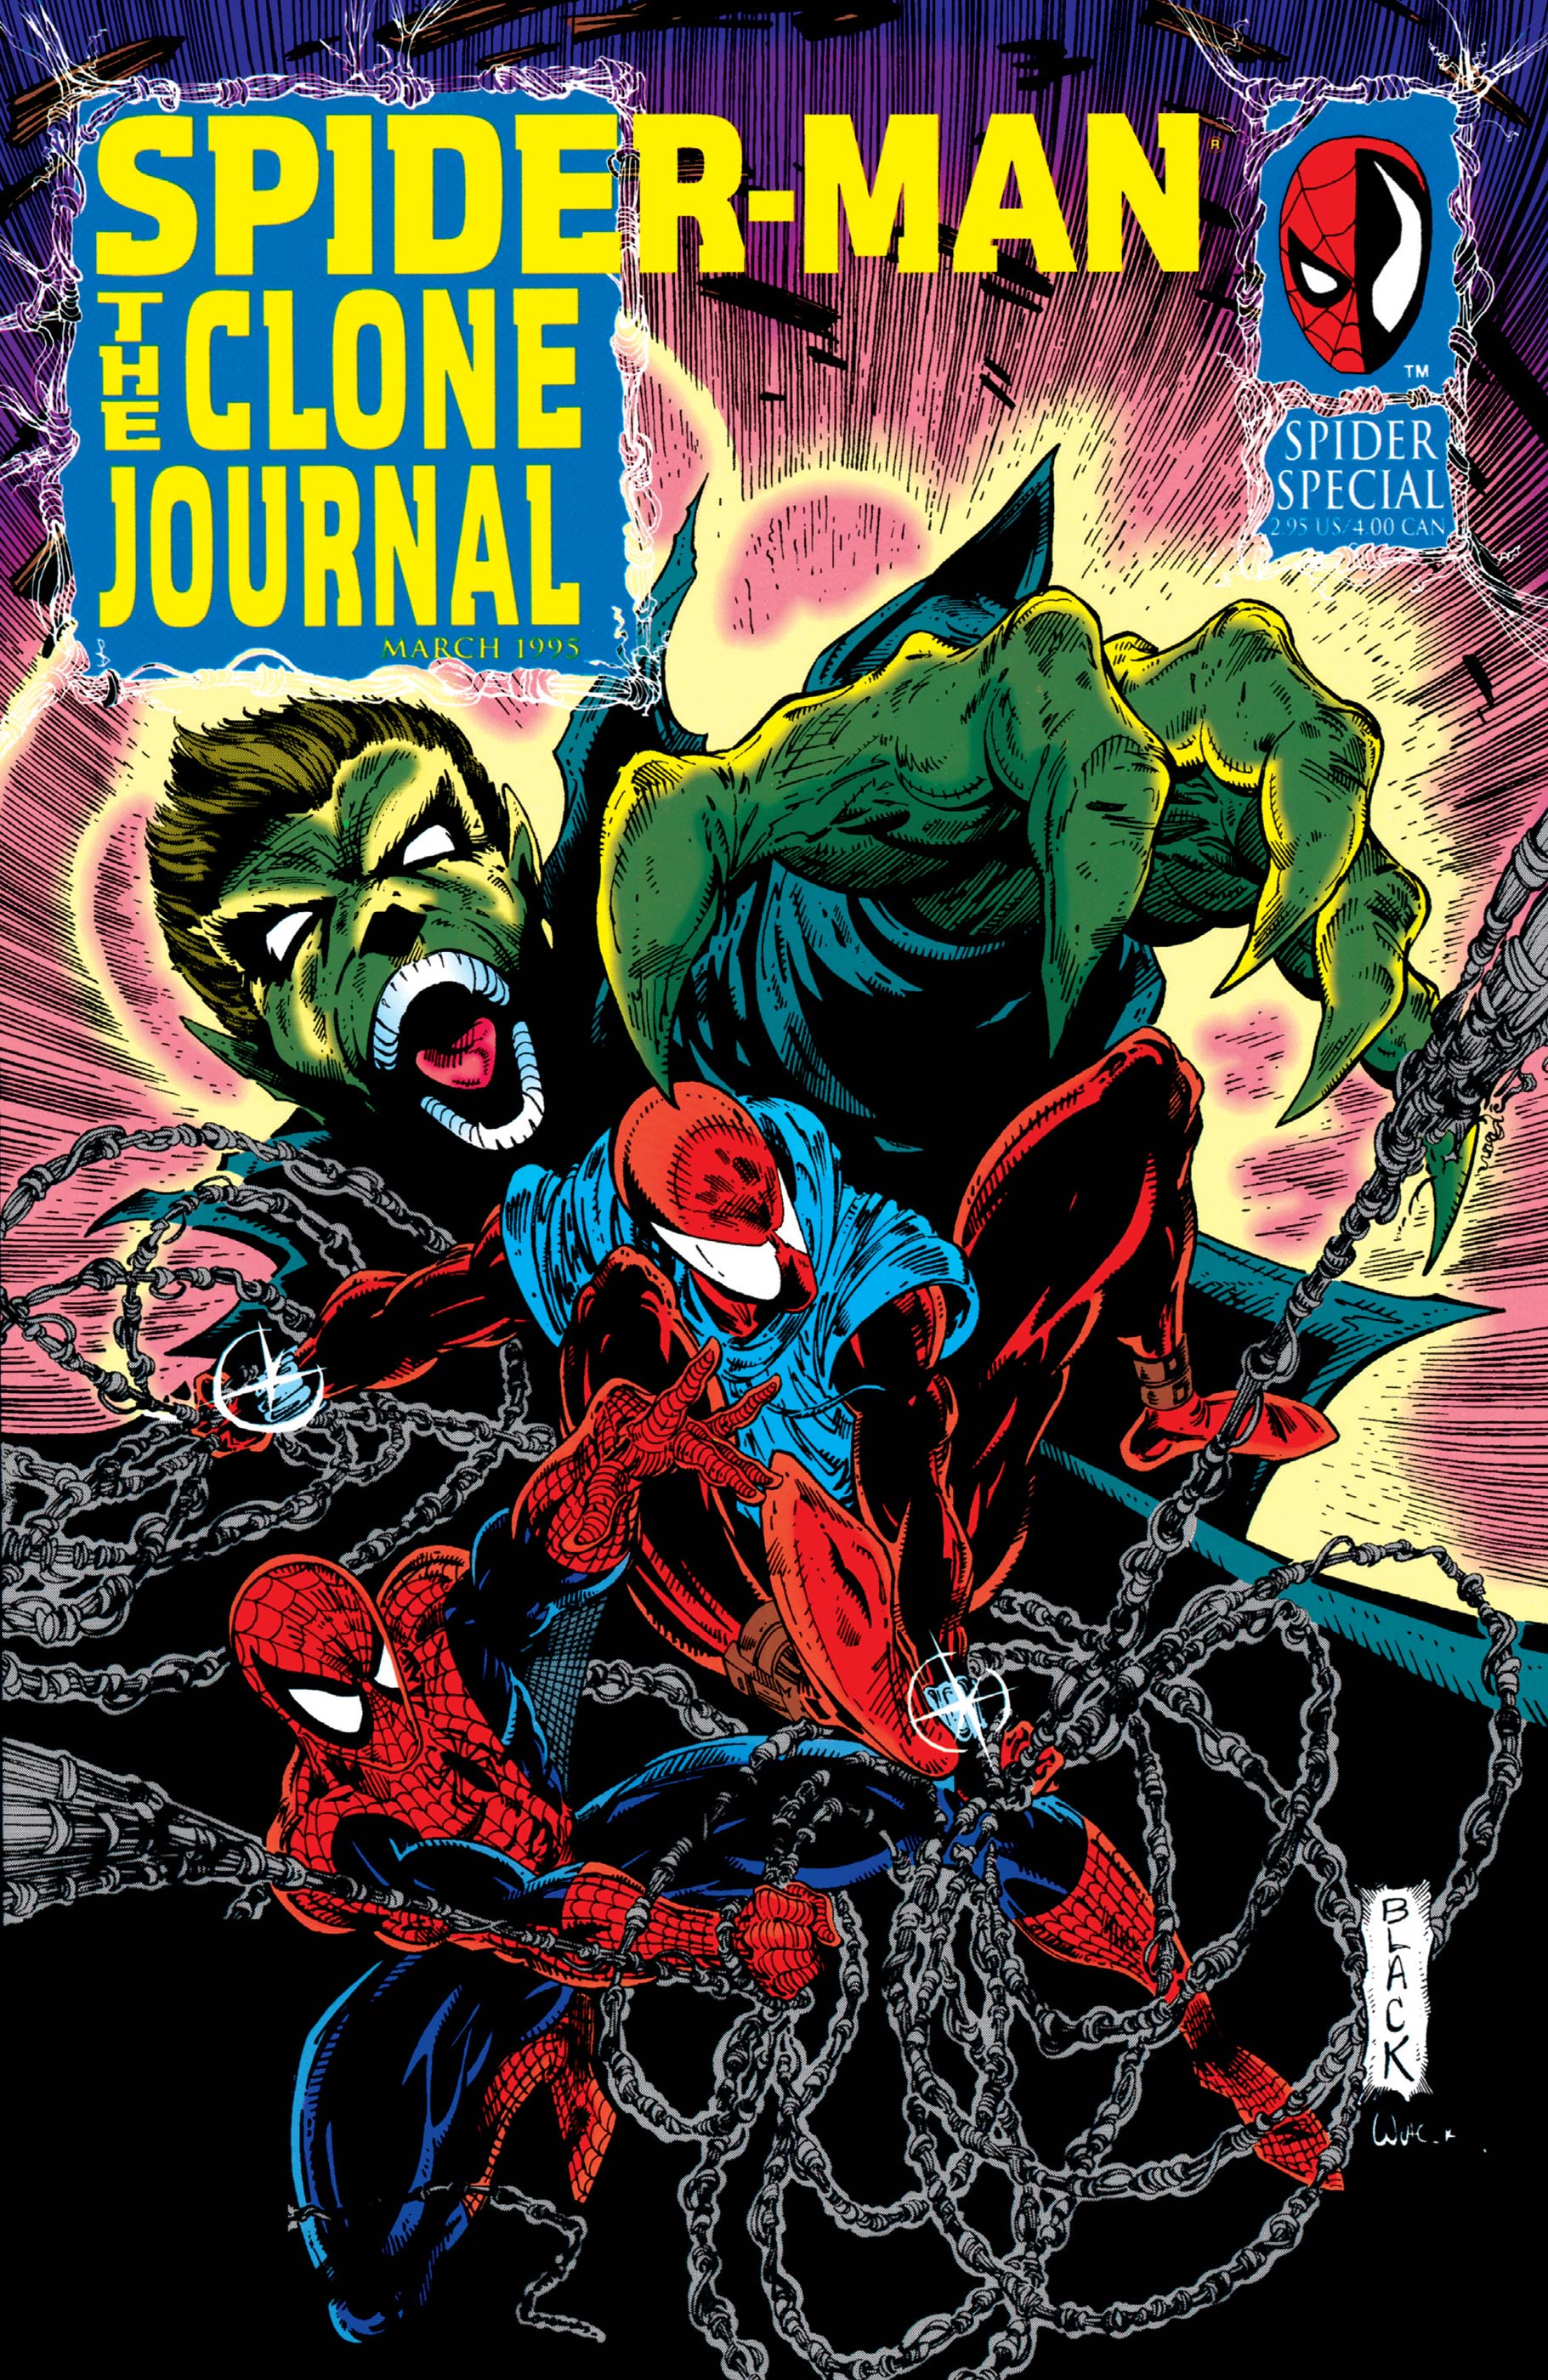 Spider-Man: The Clone Journal (1995) #1